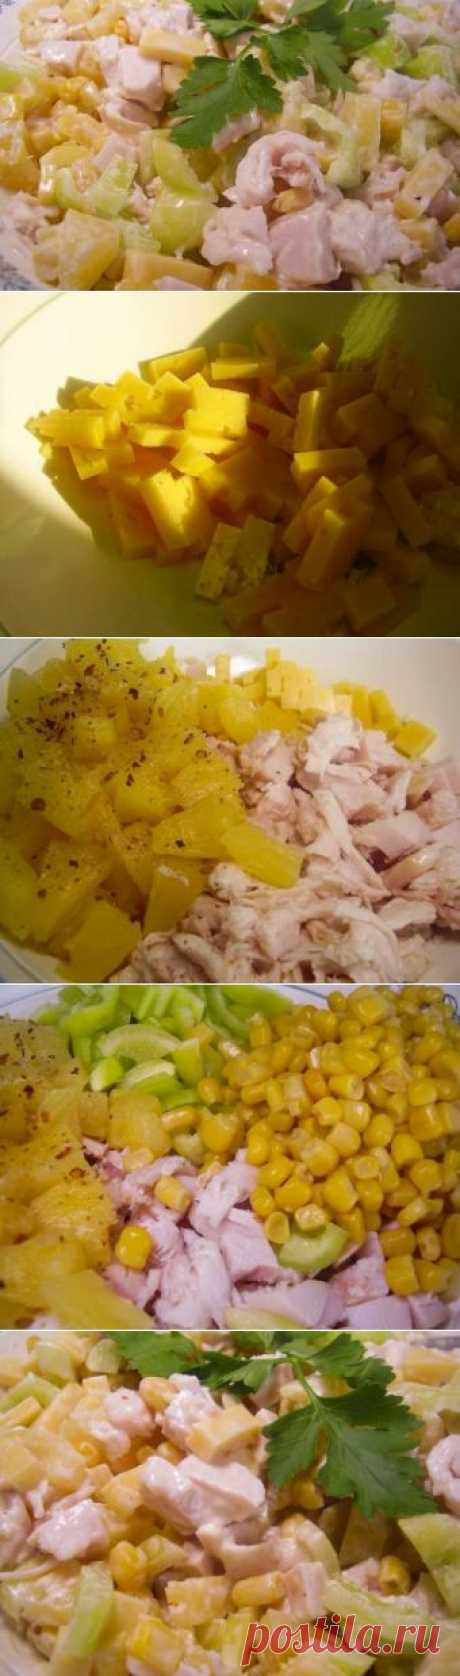 Салат с копченой курицей и ананасами / Куриные салаты / TVCook: пошаговые рецепты с фото